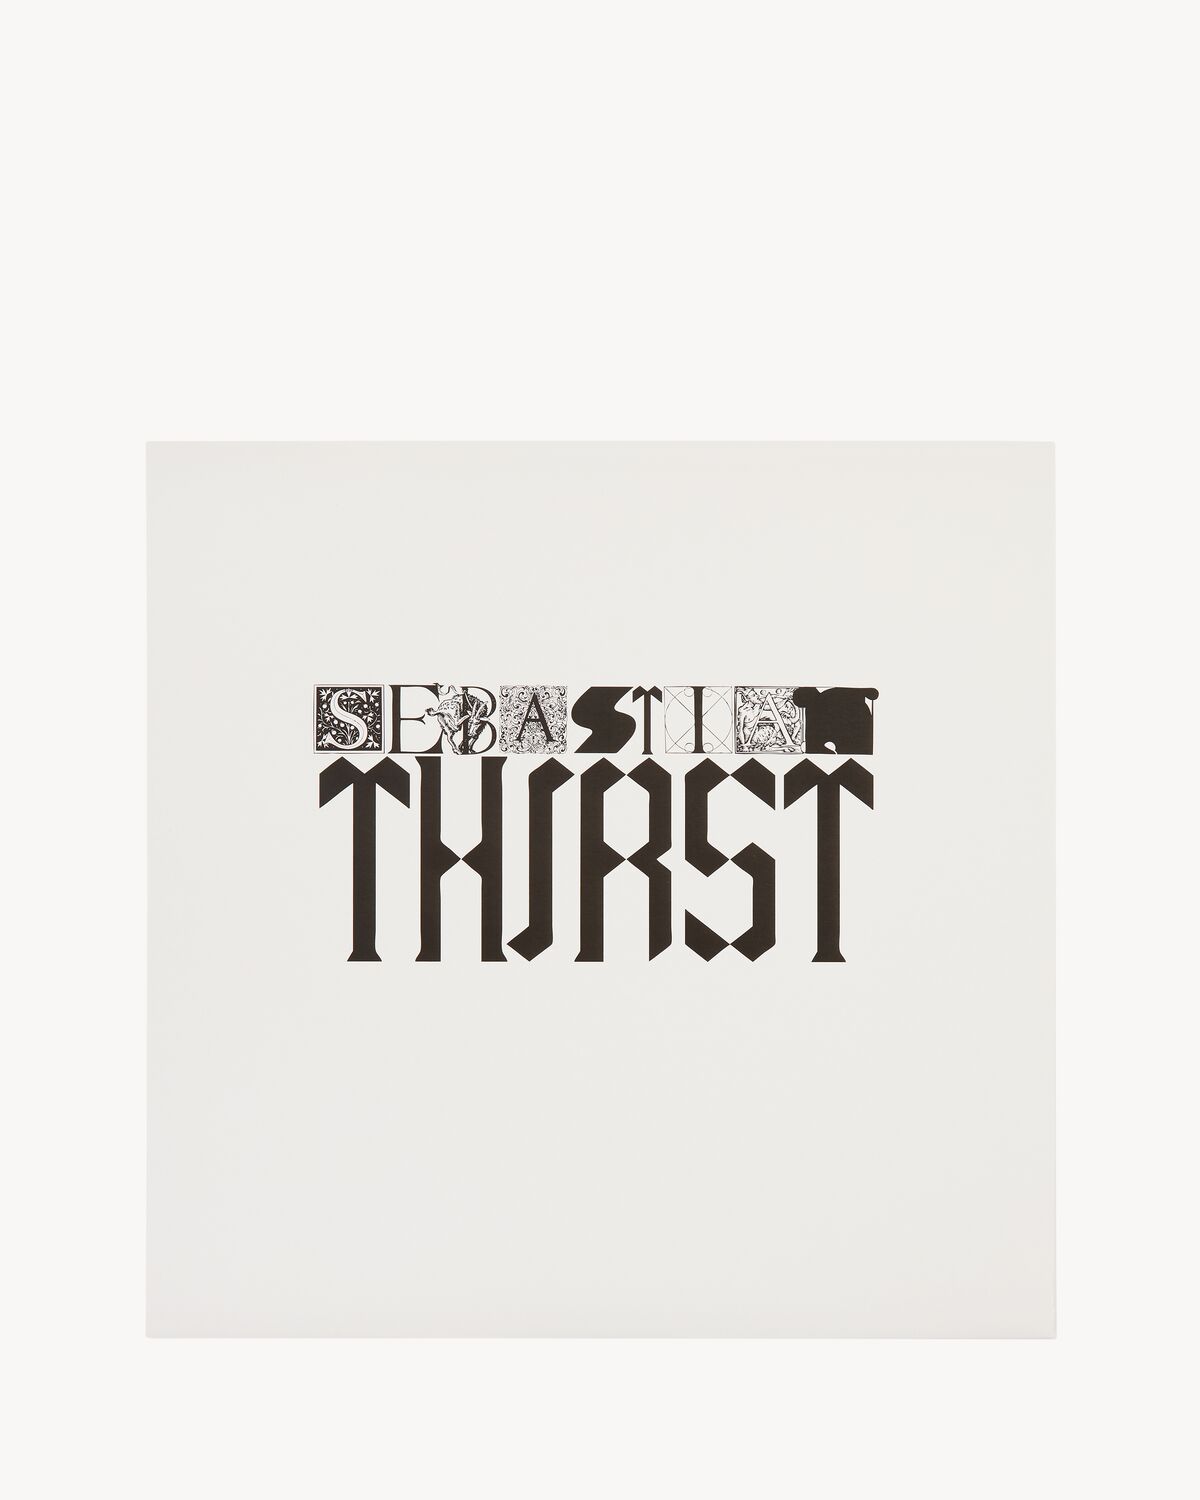 Sebastian Thirst